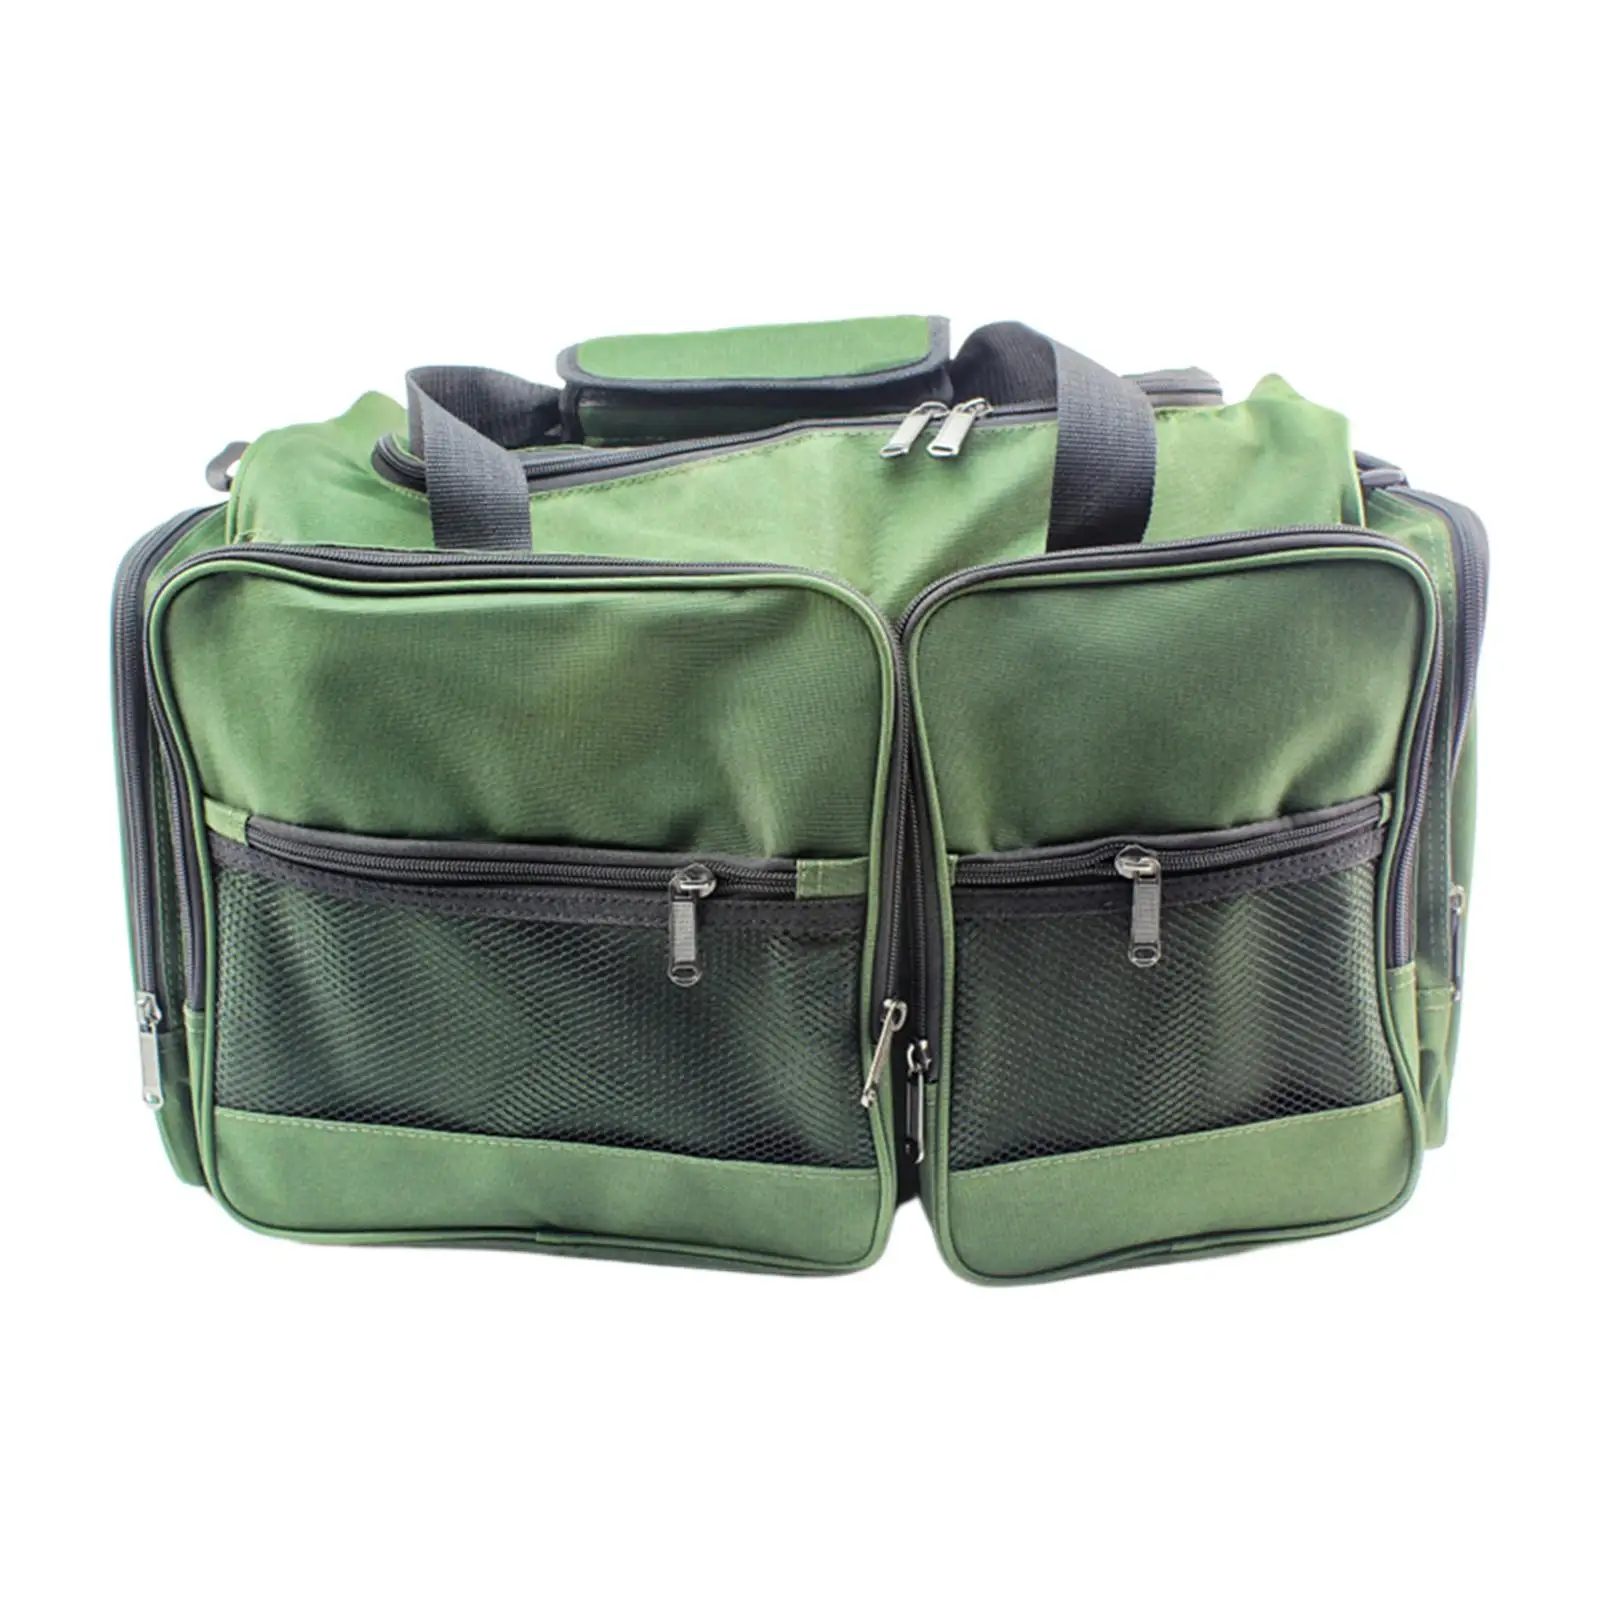 Portable Fishing Backpack Organizer Pack Holder Shoulder Bag for Fishing Travel Hiking